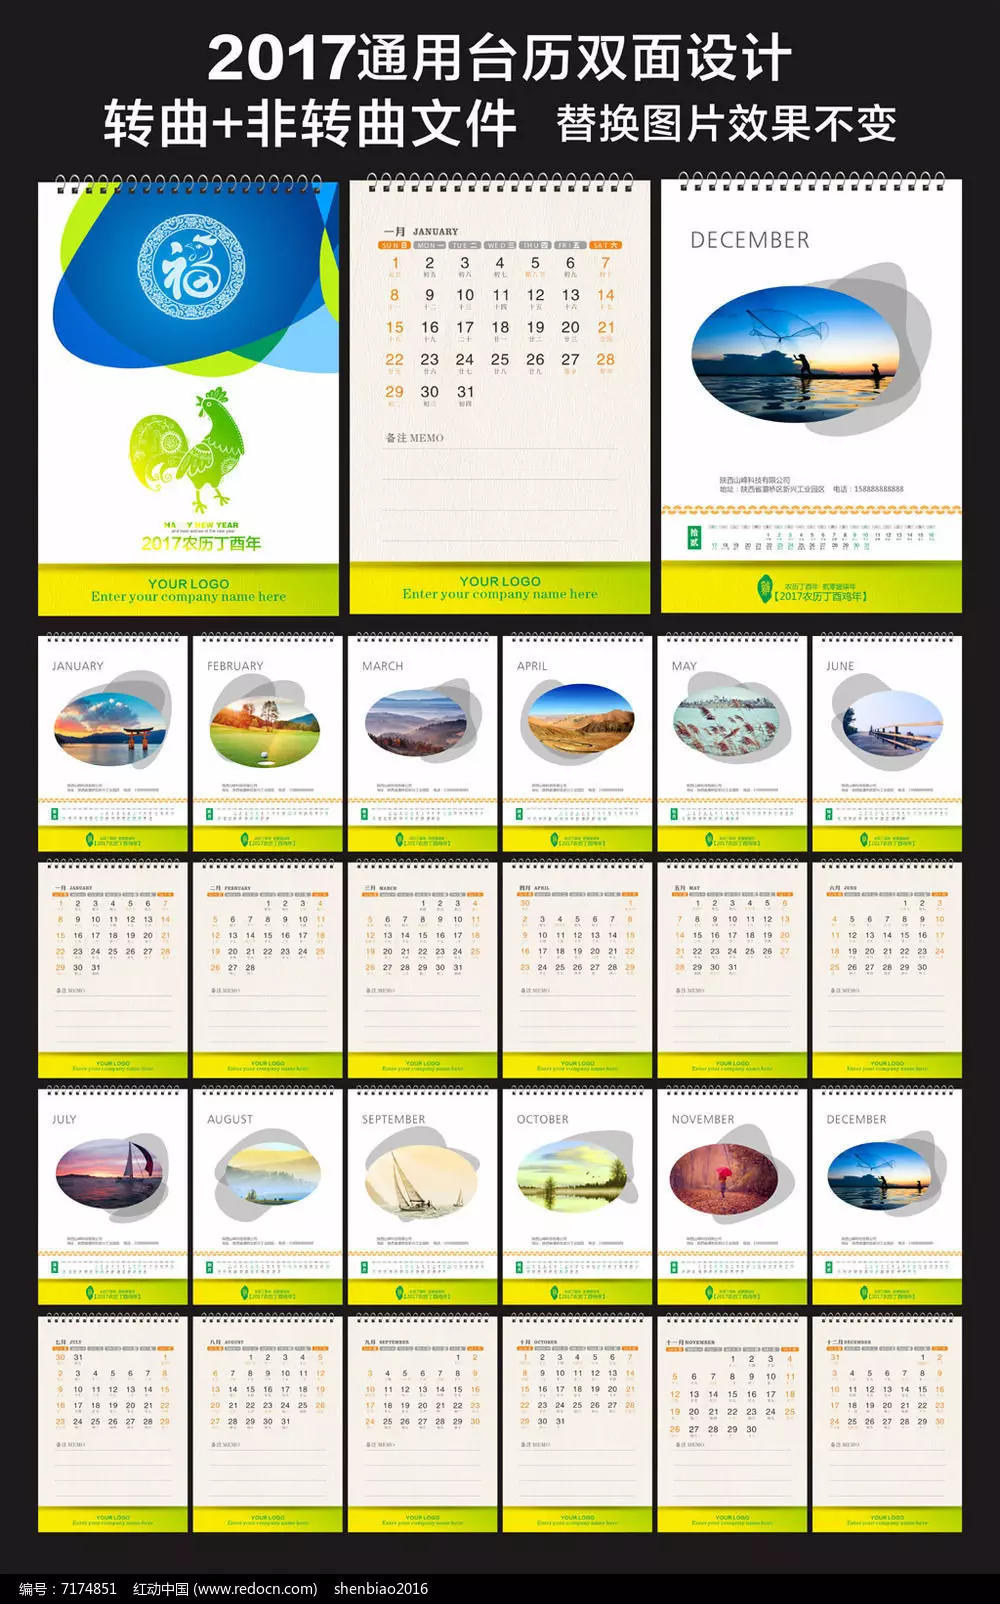 8、手机日历:手机日历软件哪个好 全面简洁舒适的日历推荐